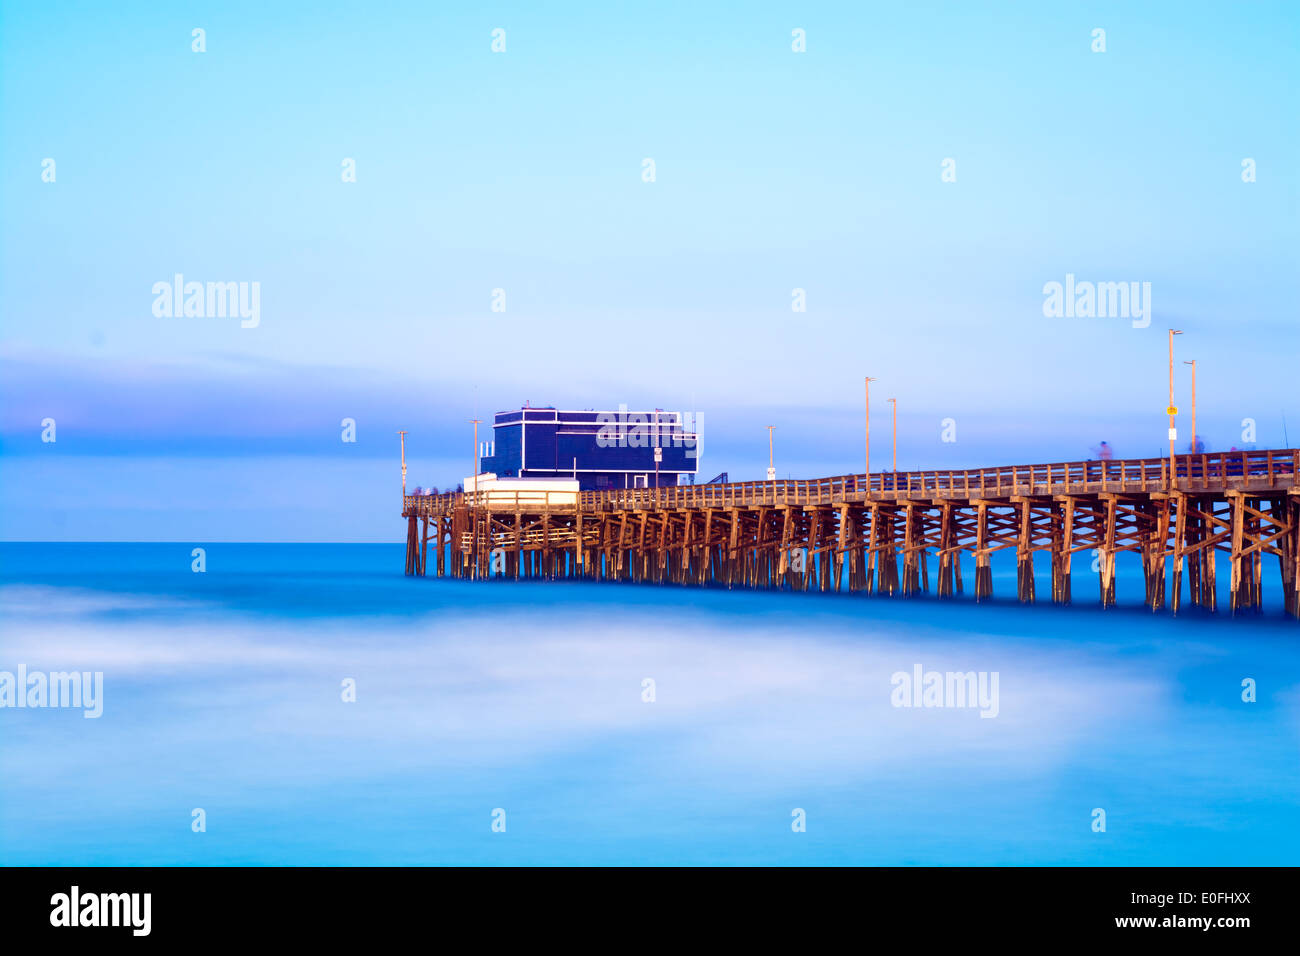 Balboa pier à Newport Beach, en Californie, au lever du soleil, montre la structure de bois de la jetée et un vibrant, ciel bleu et la mer. Banque D'Images